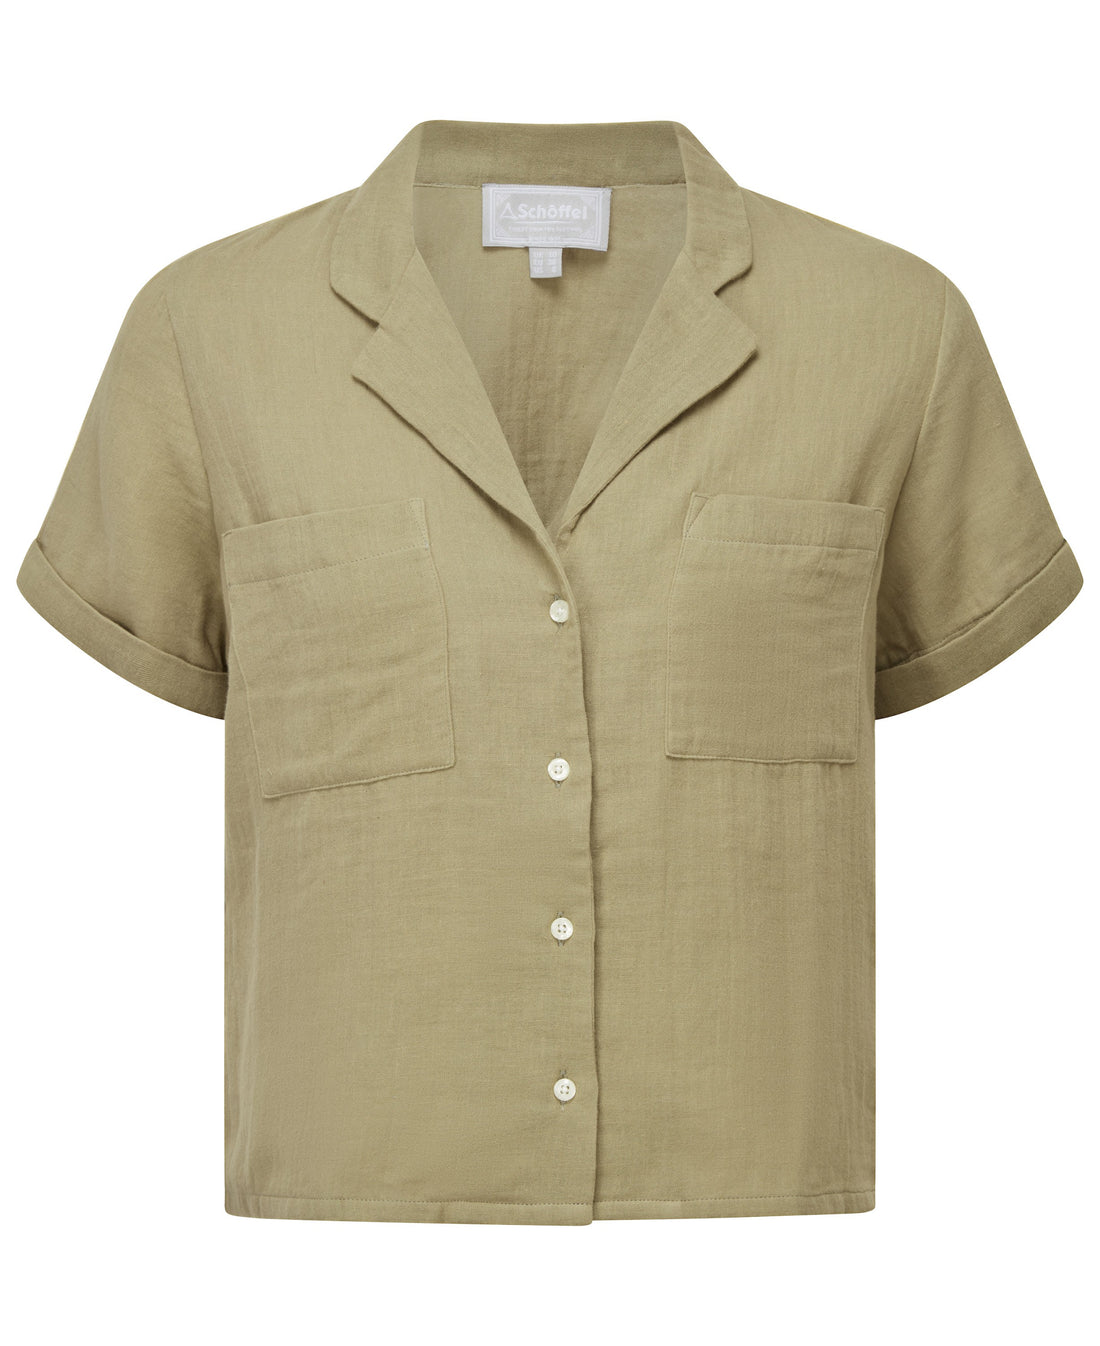 Summerfield Shirt - Light Khaki Green